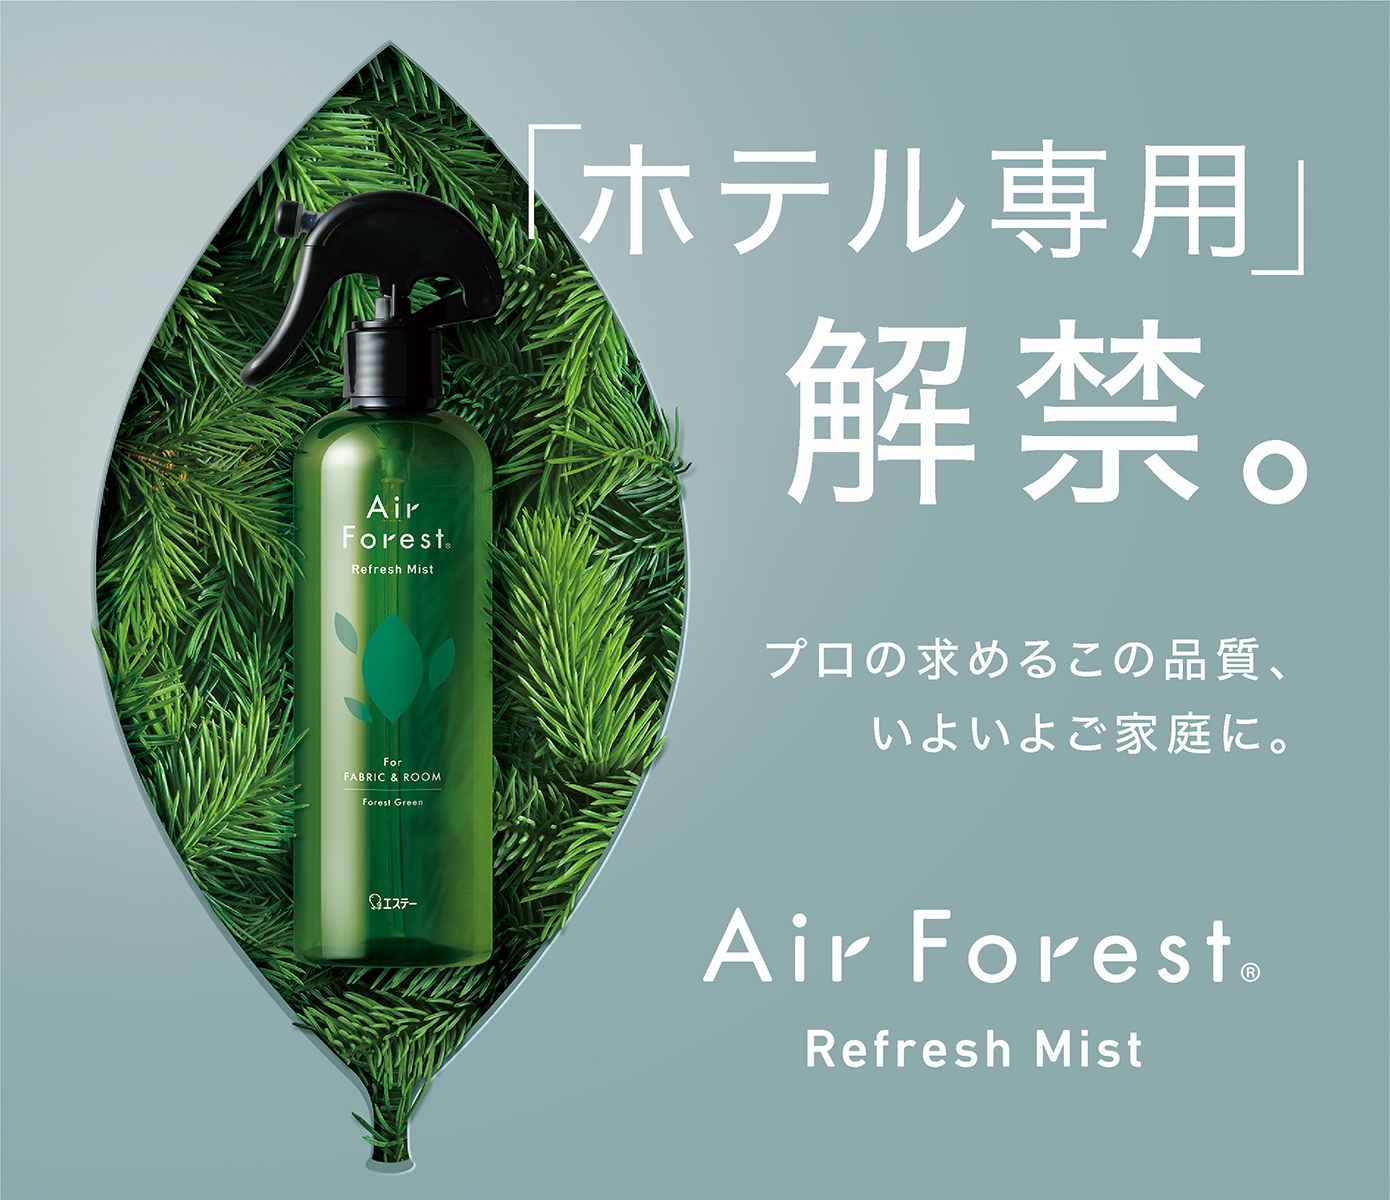 Air Forest Refresh Mist